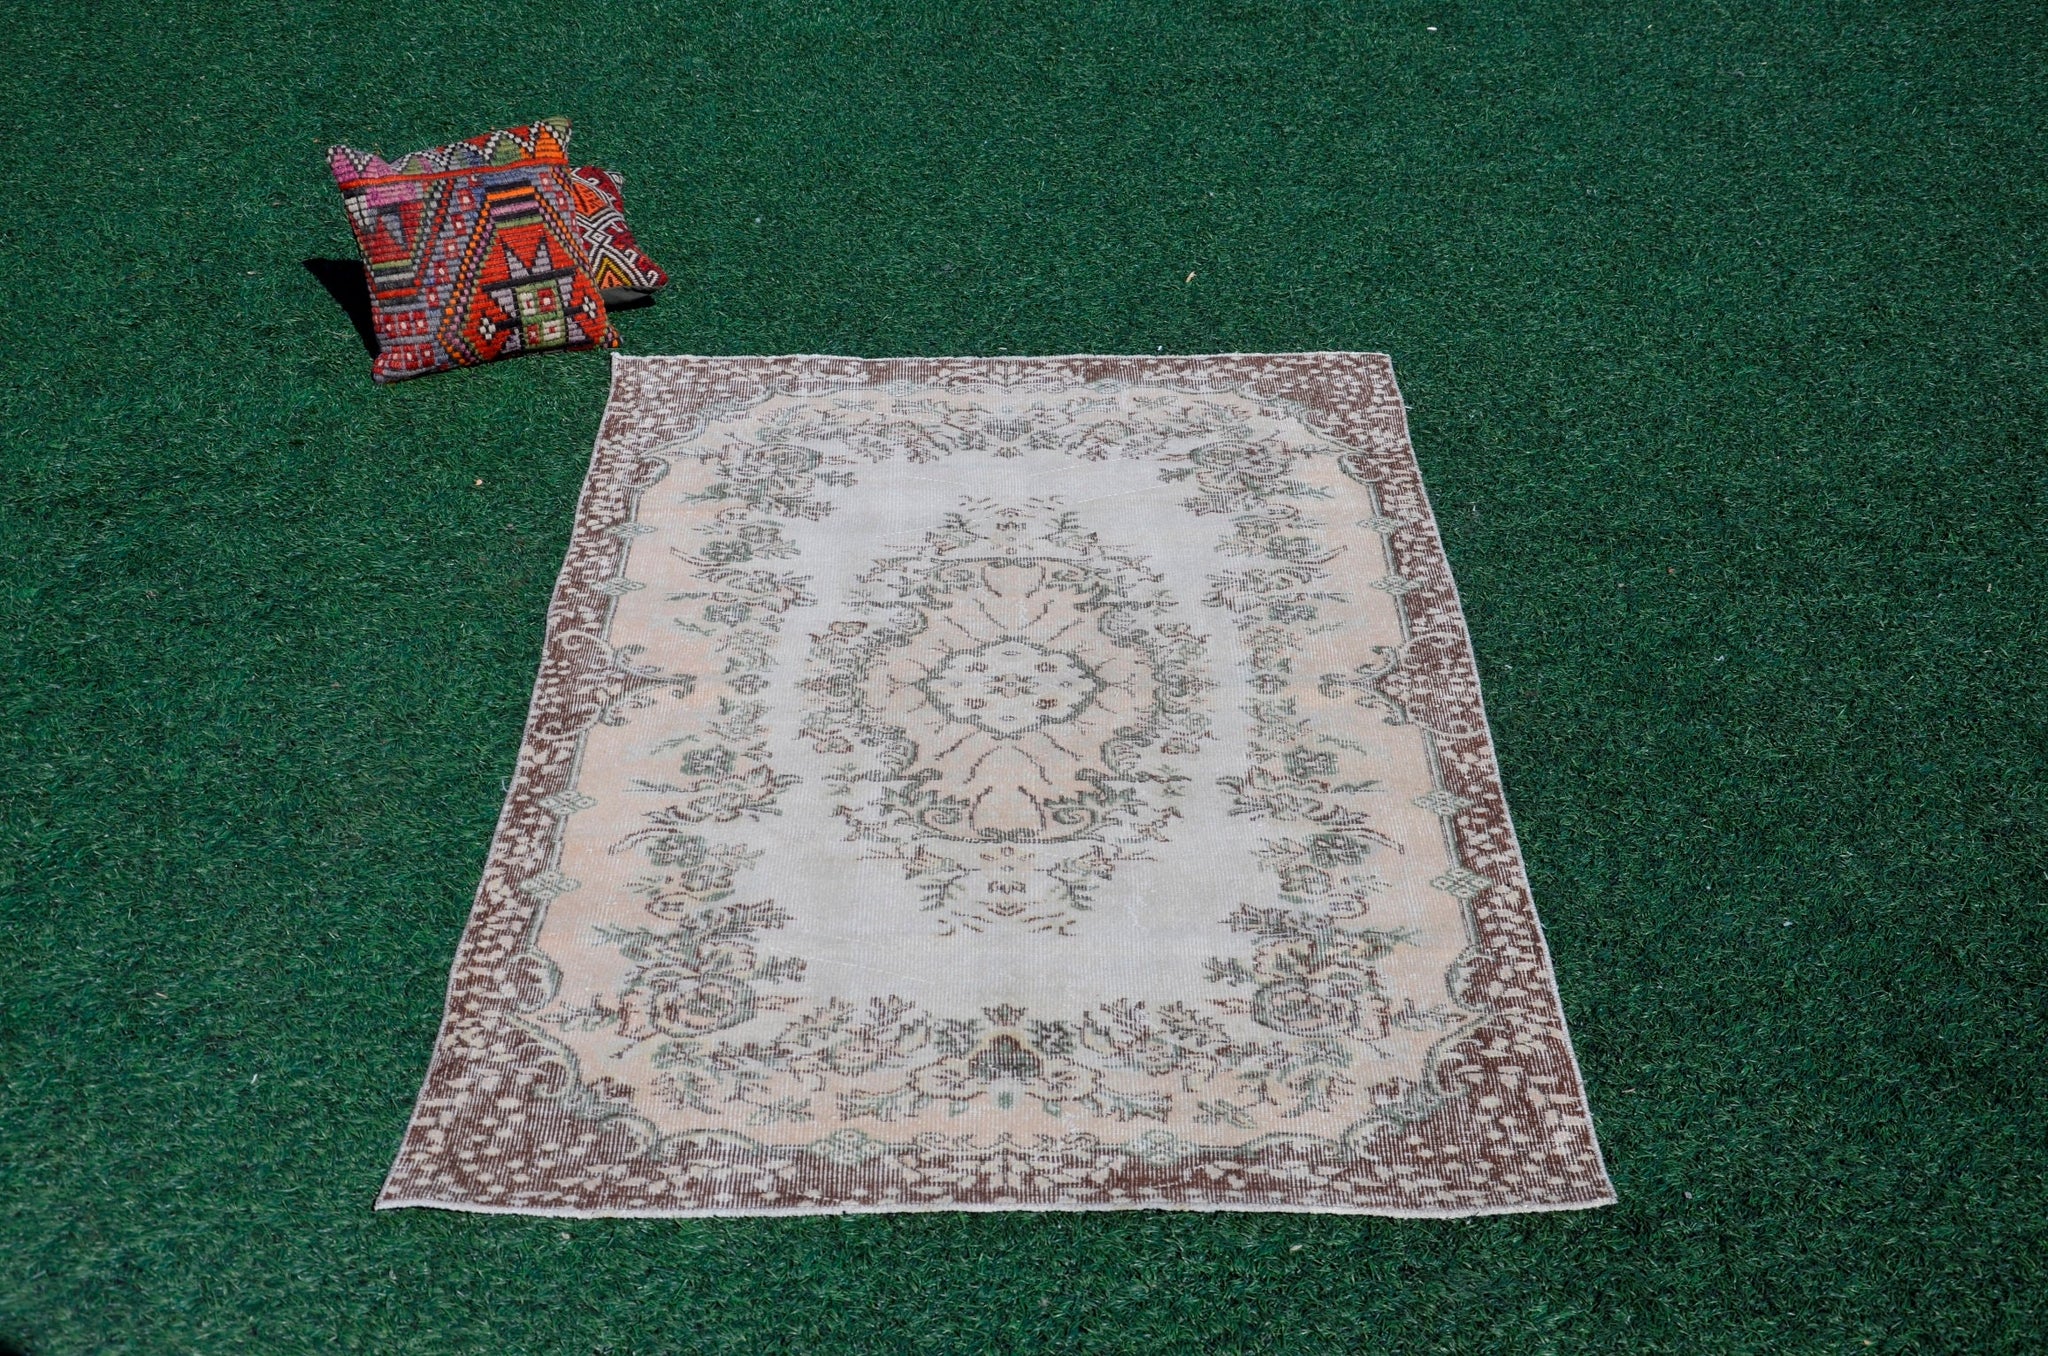 Handmade Turkish rug for home decor, Vintage rug, area rug boho rug bedroom rug kitchen rug bathroom rug kilim rug handmade, rugs 4x7, 666166